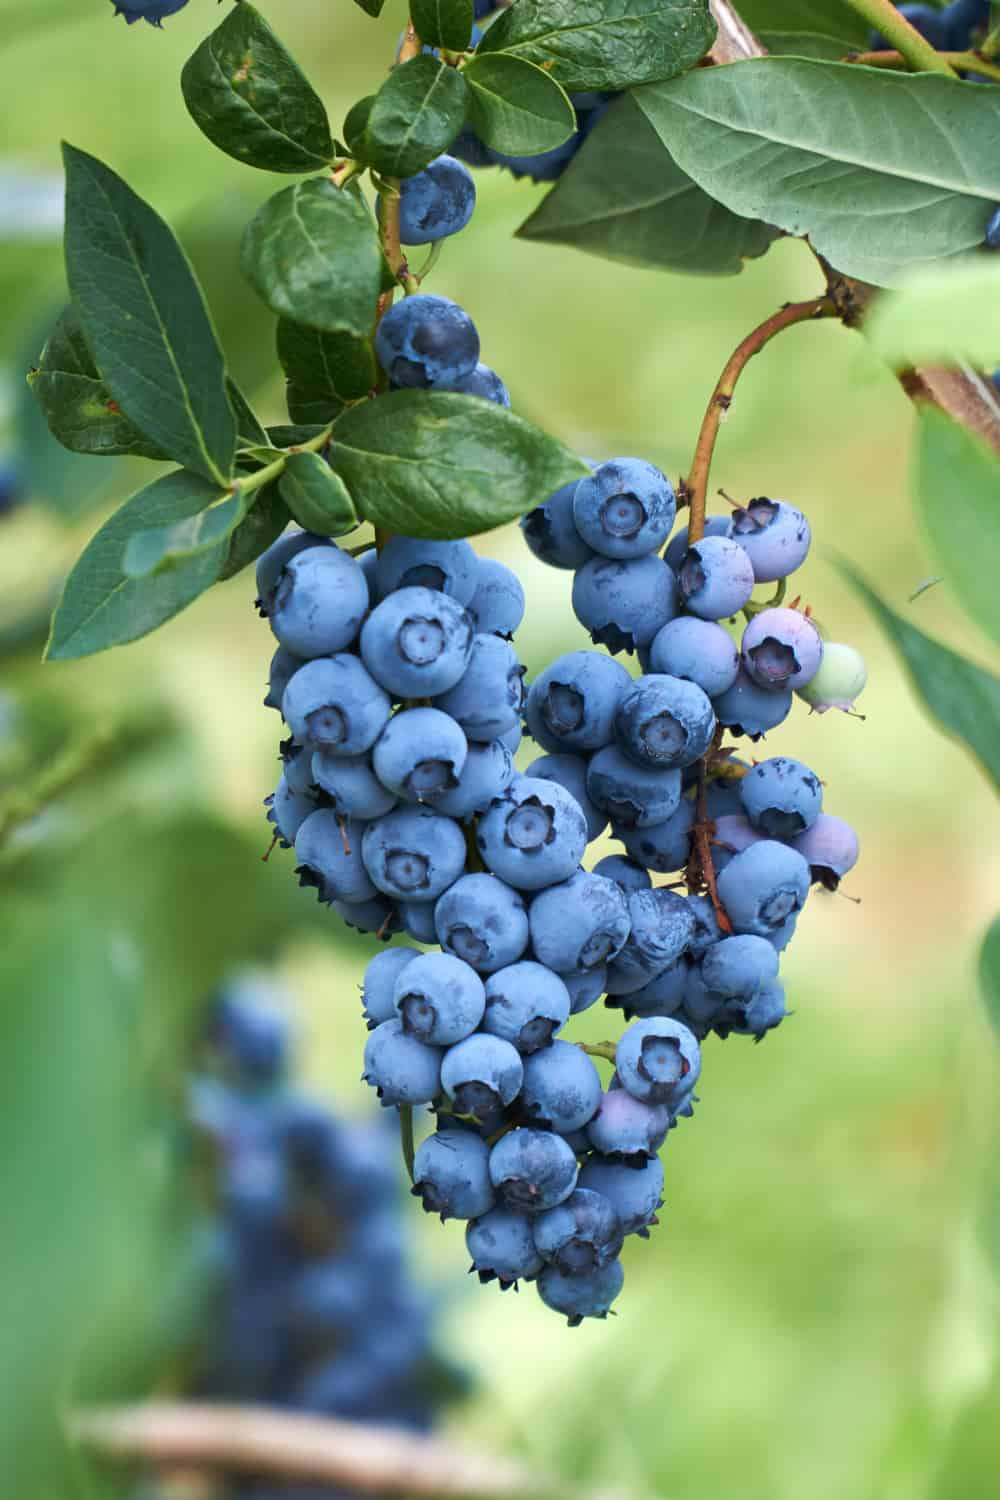 How long do blueberries last